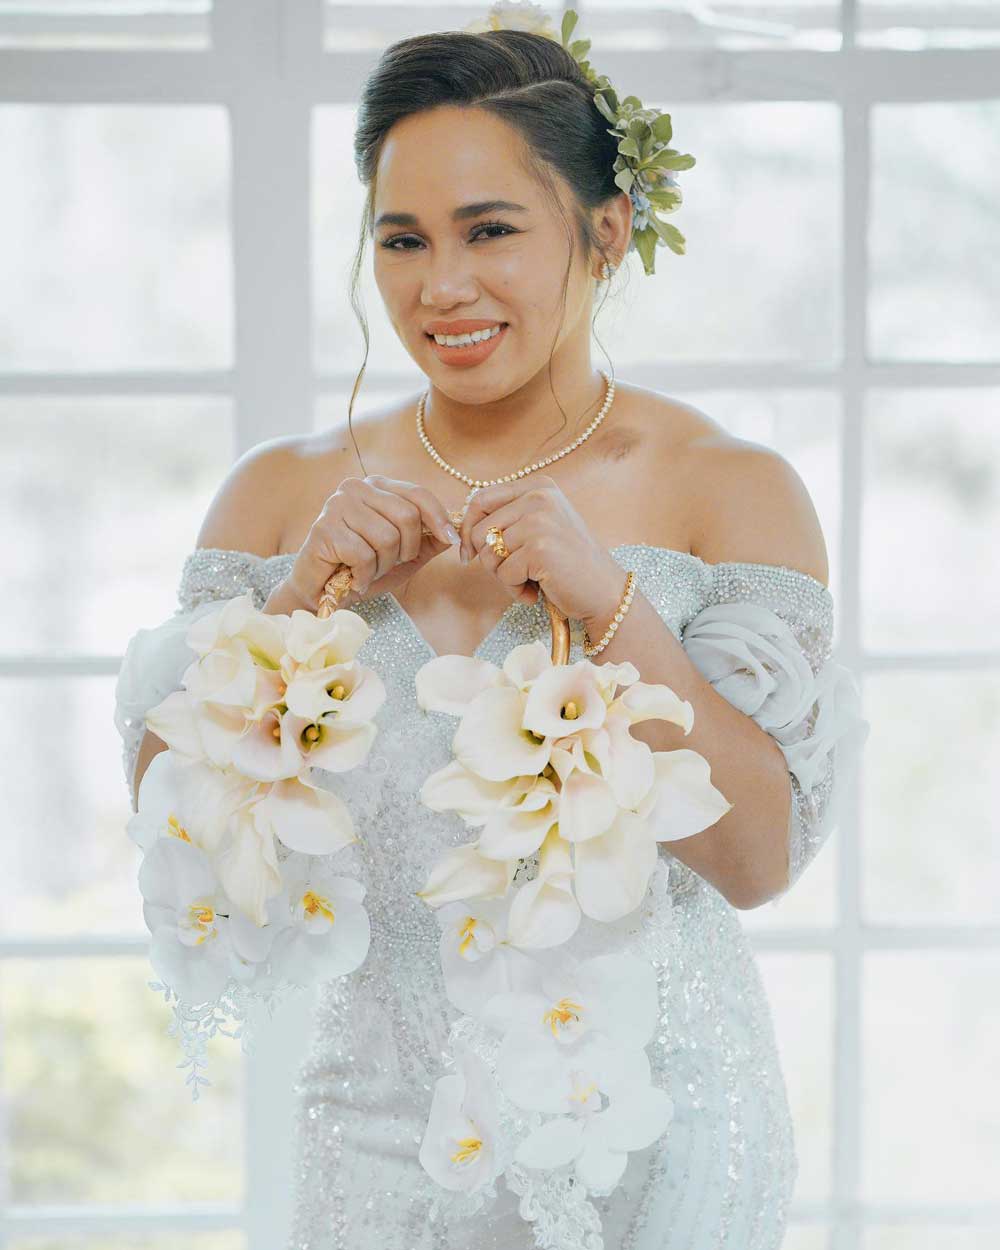 Hidilyn Diaz wedding bouquet by Gideon Hermosa